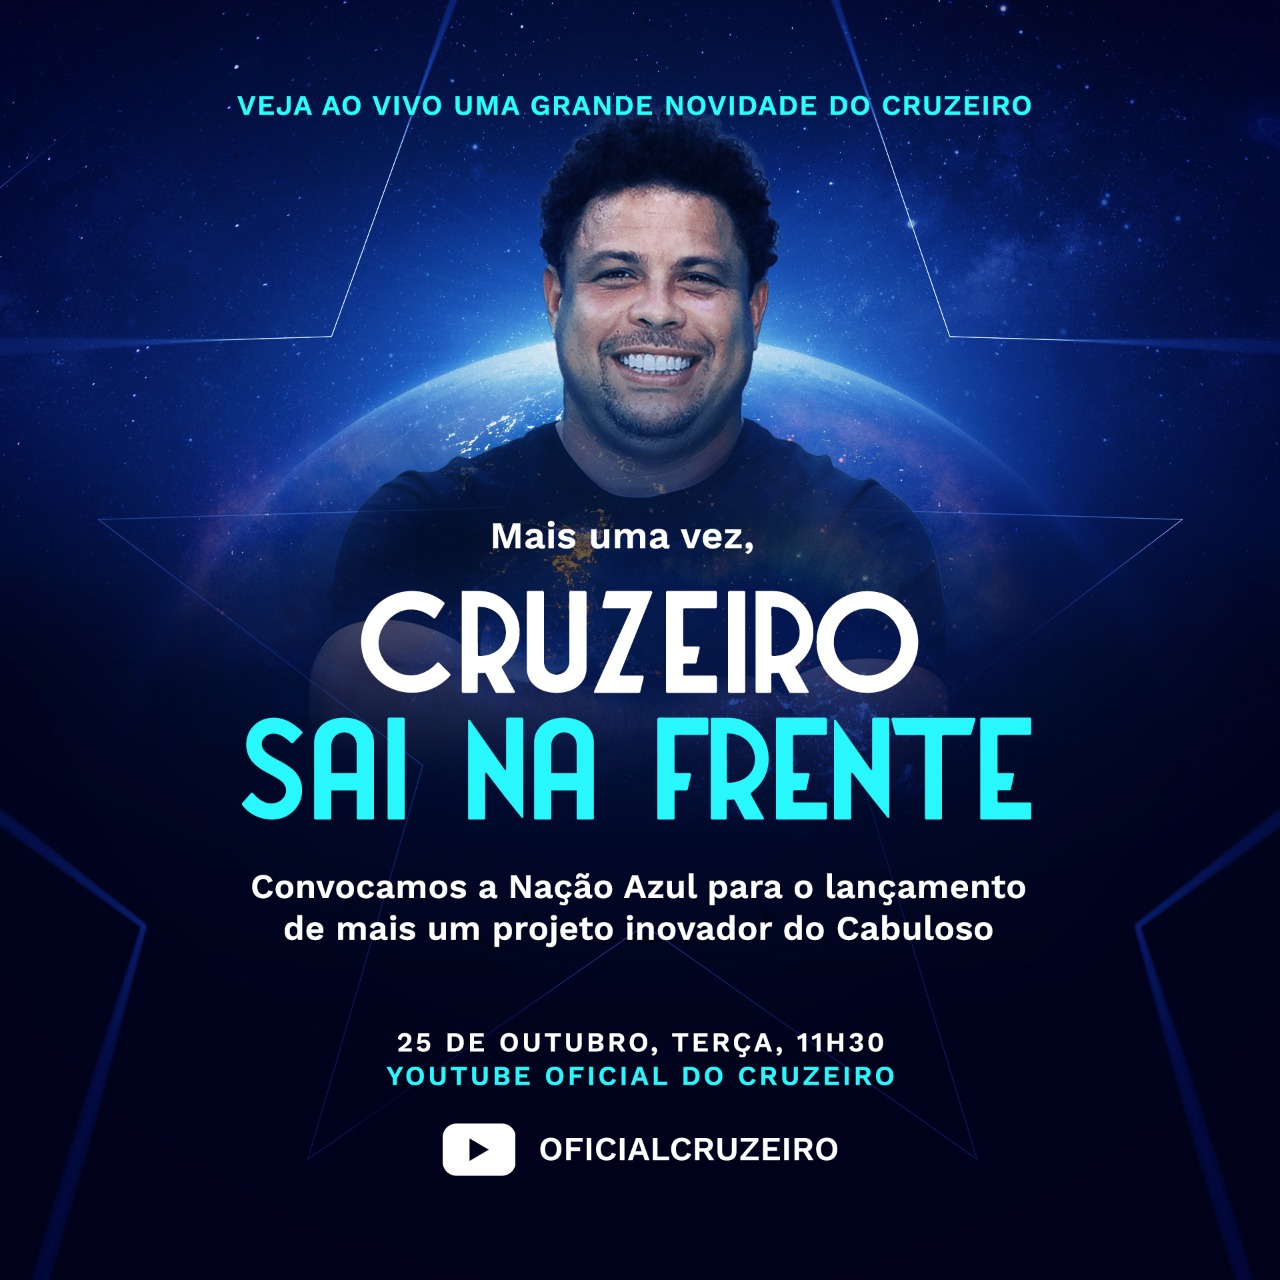 Ronaldo Nazário e Cruzeiro anunciam Big Blue, um dos maiores eventos digitais de clubes de futebol do mundo